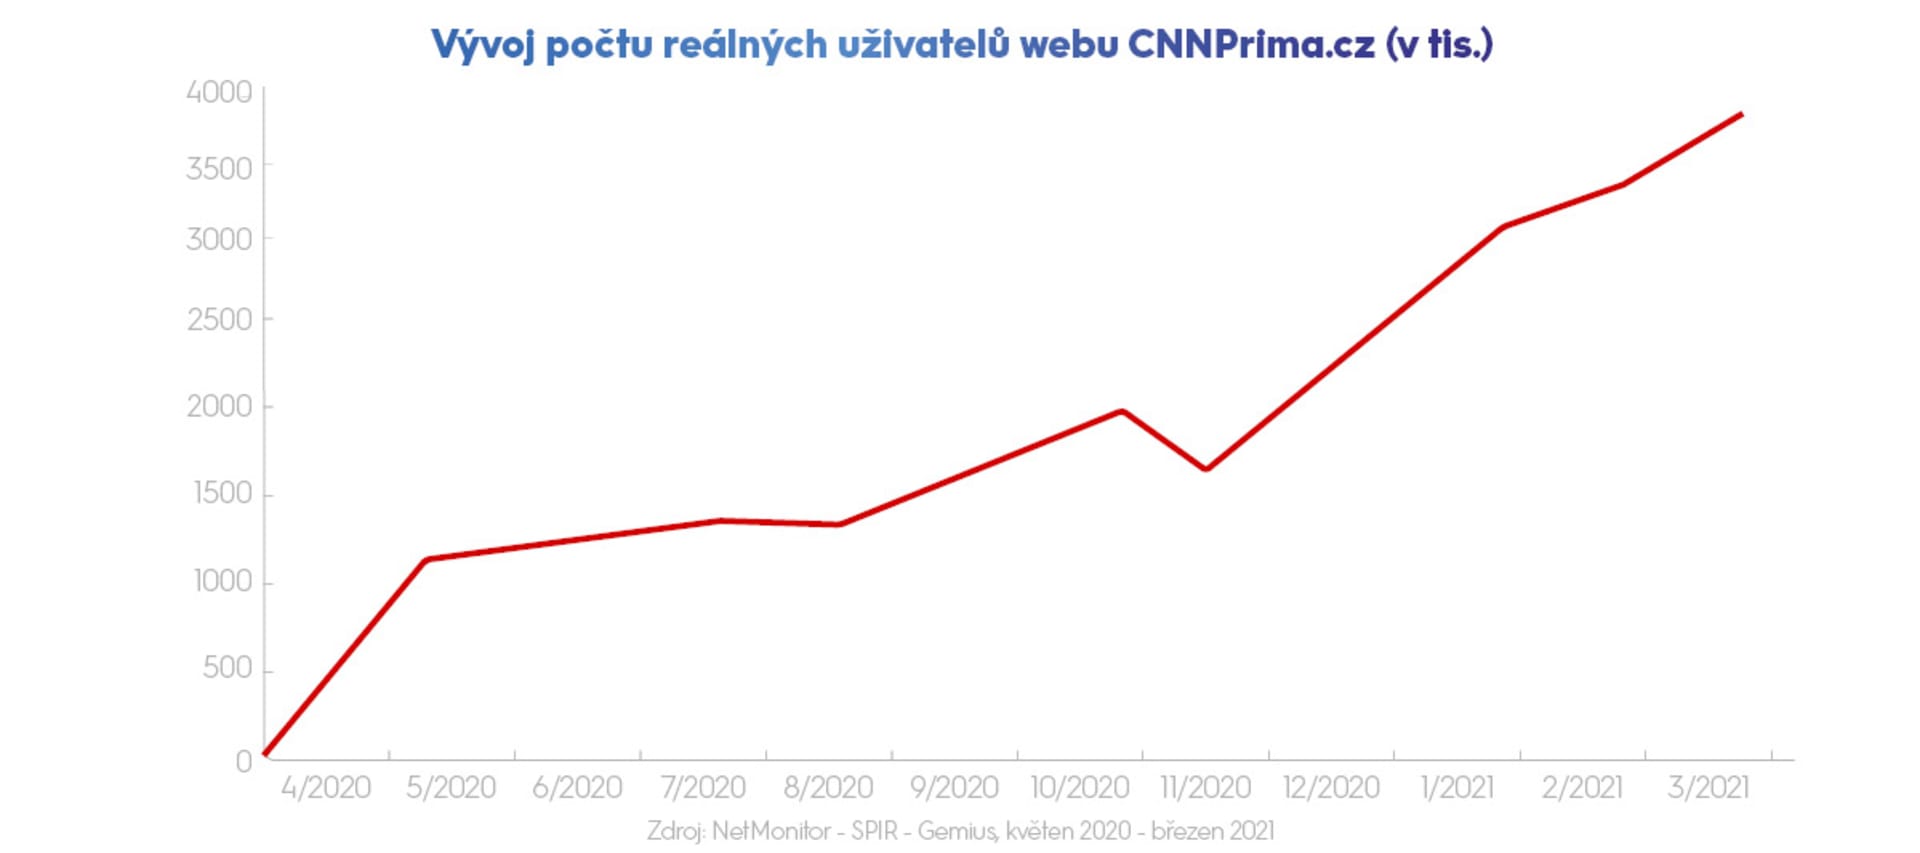 Vývoj počtu reálných uživatelů webu CNNPrima.cz (v tis.)